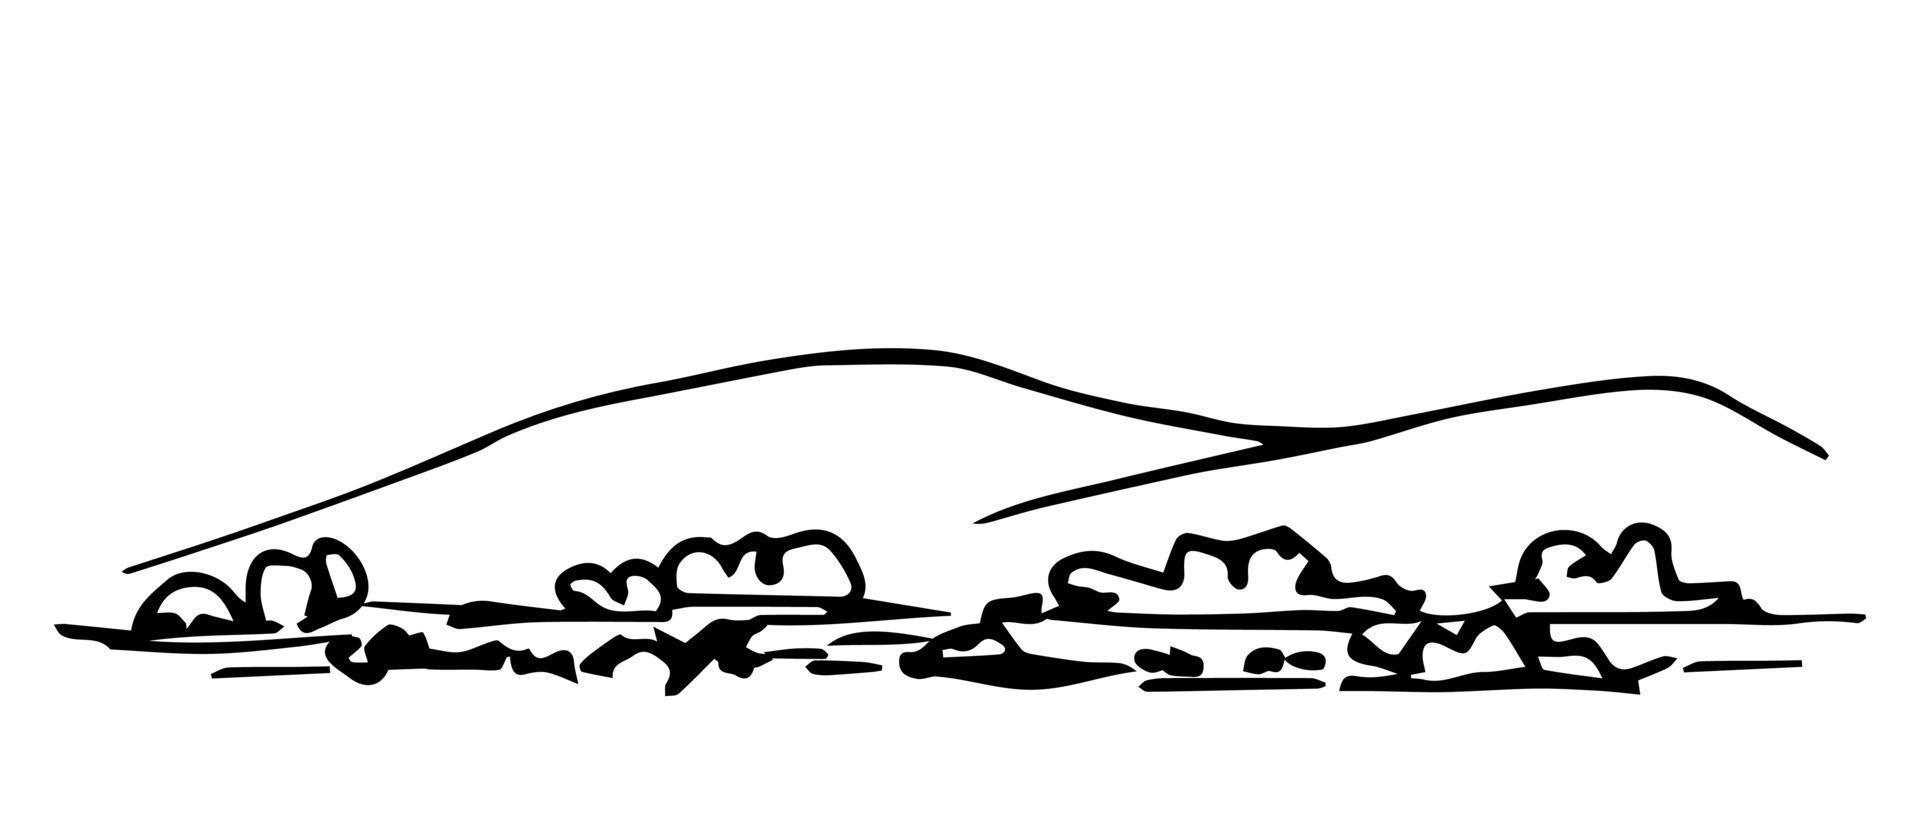 simple boceto vectorial de contorno negro dibujado a mano. naturaleza, paisaje. colinas, montañas en el horizonte, piedras, arbustos, hierba en primer plano. vector